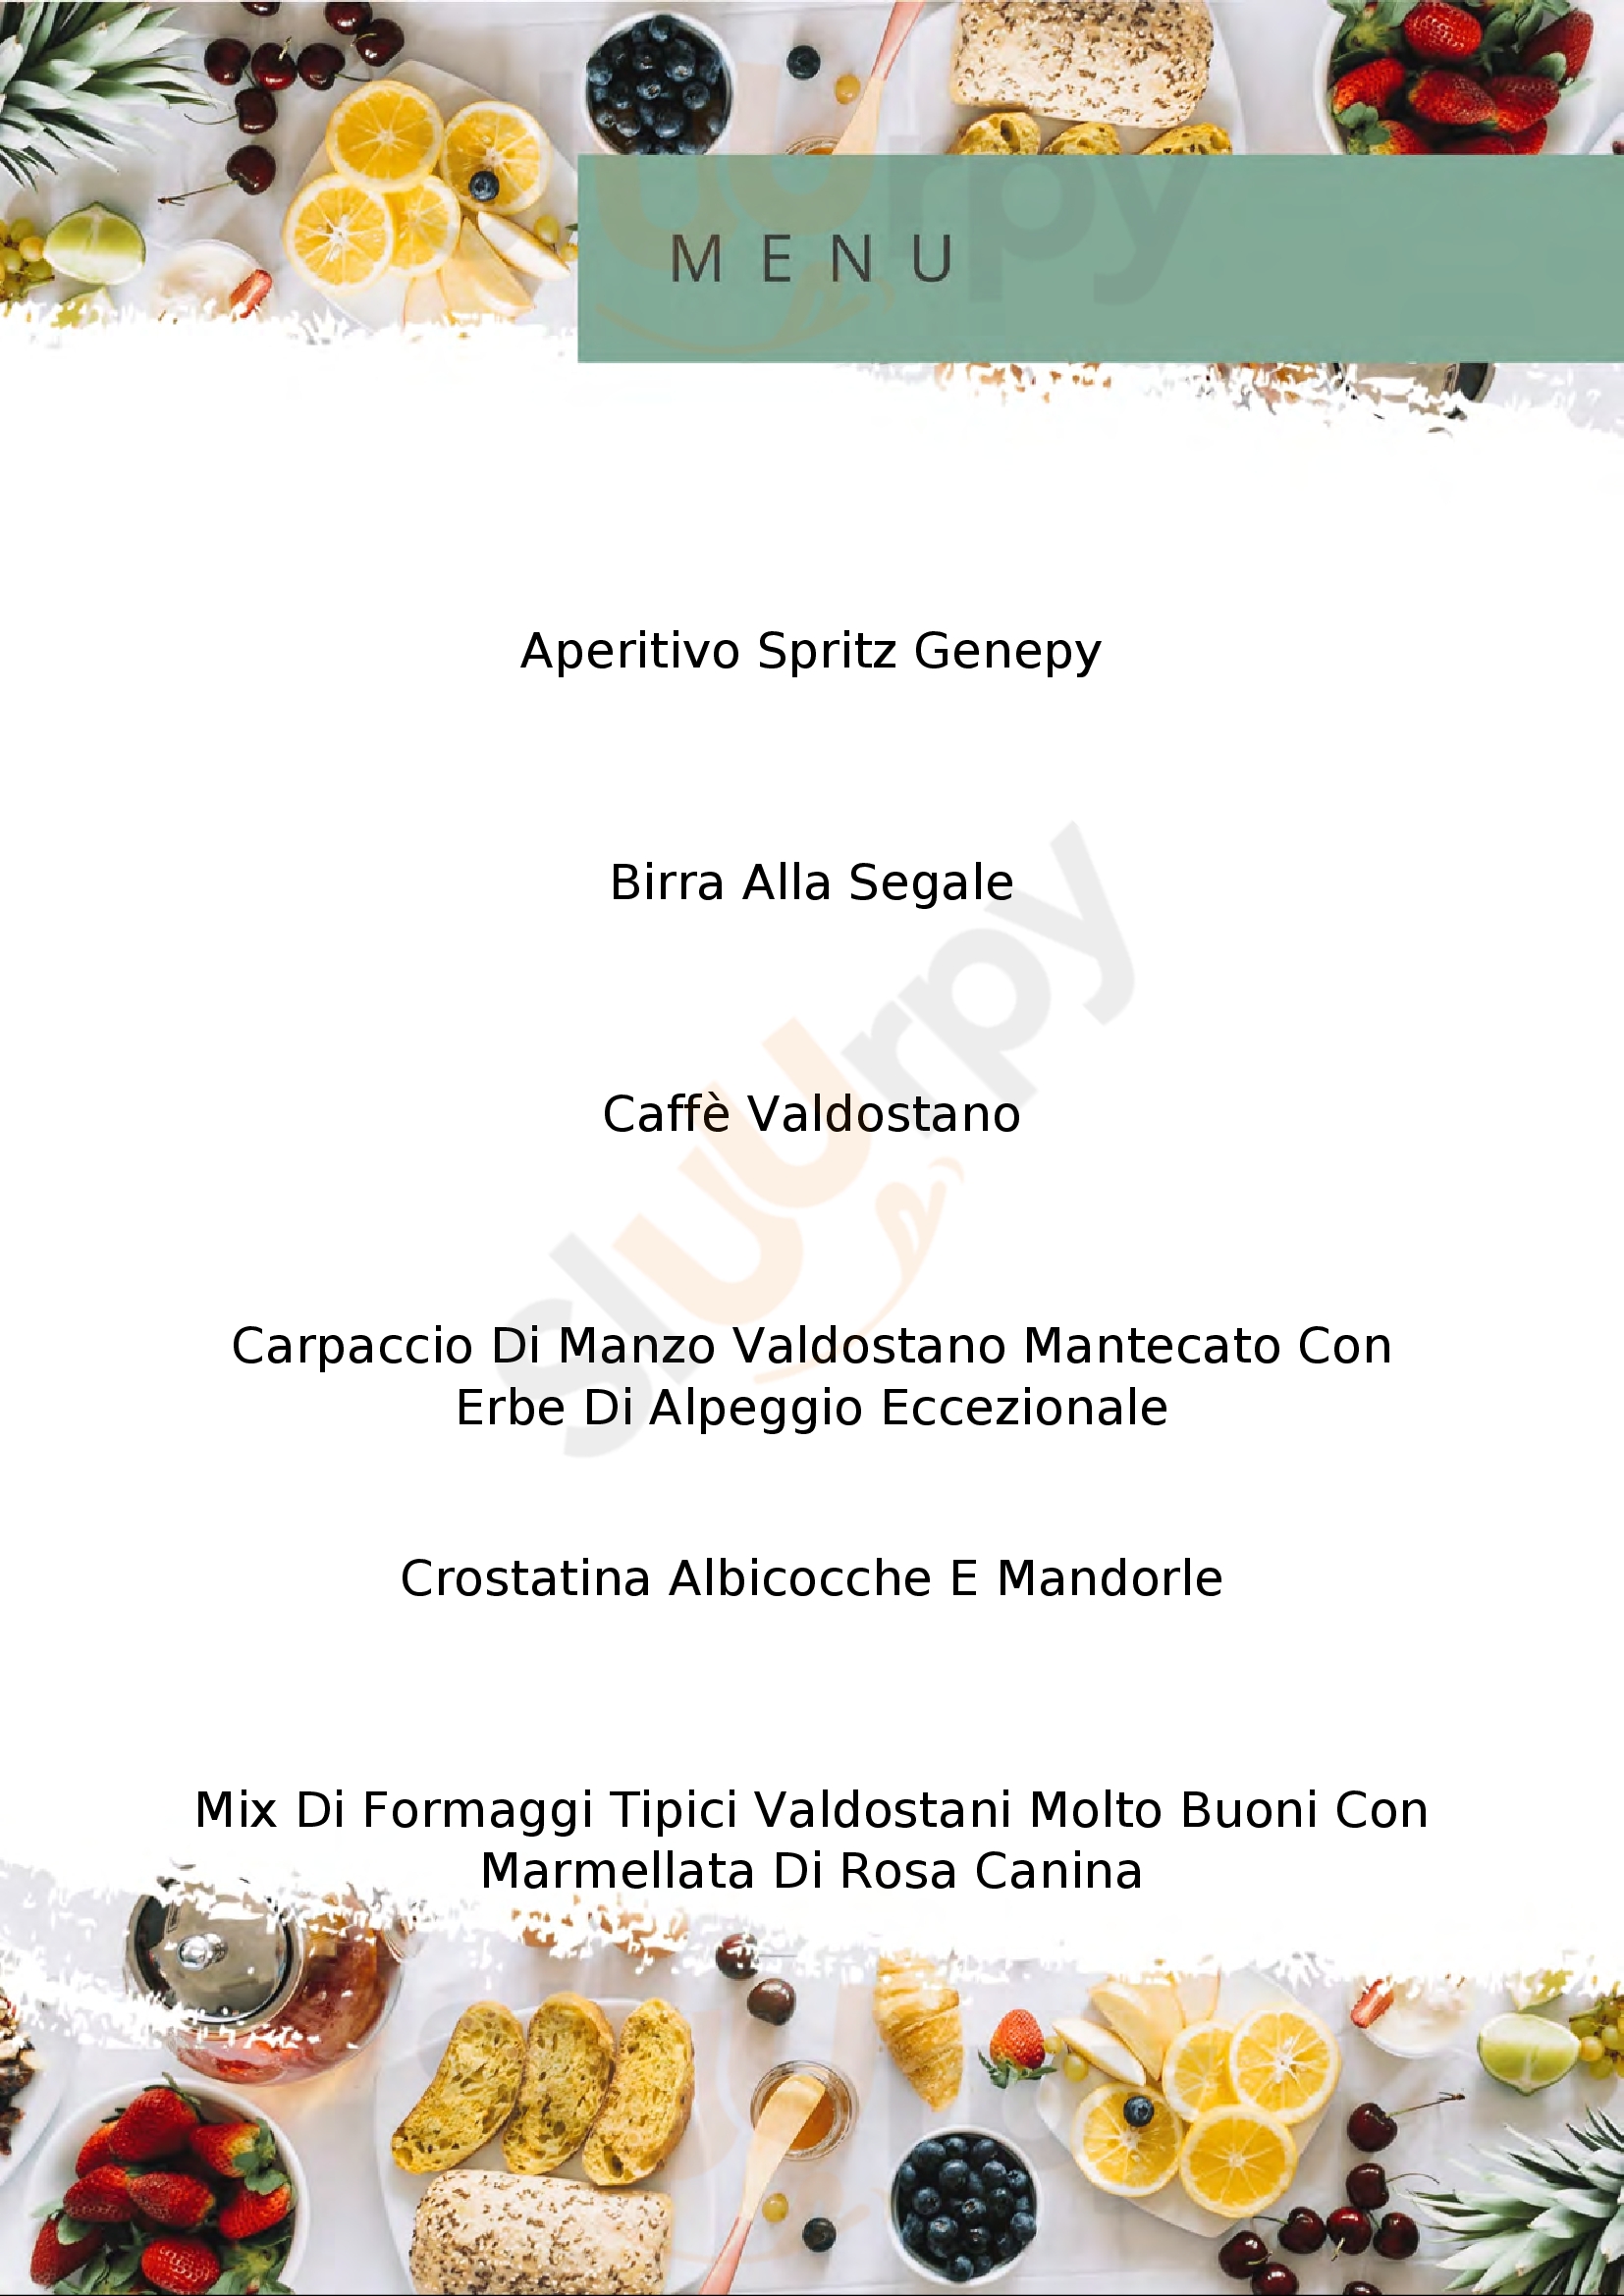 La Vineria Aosta menù 1 pagina